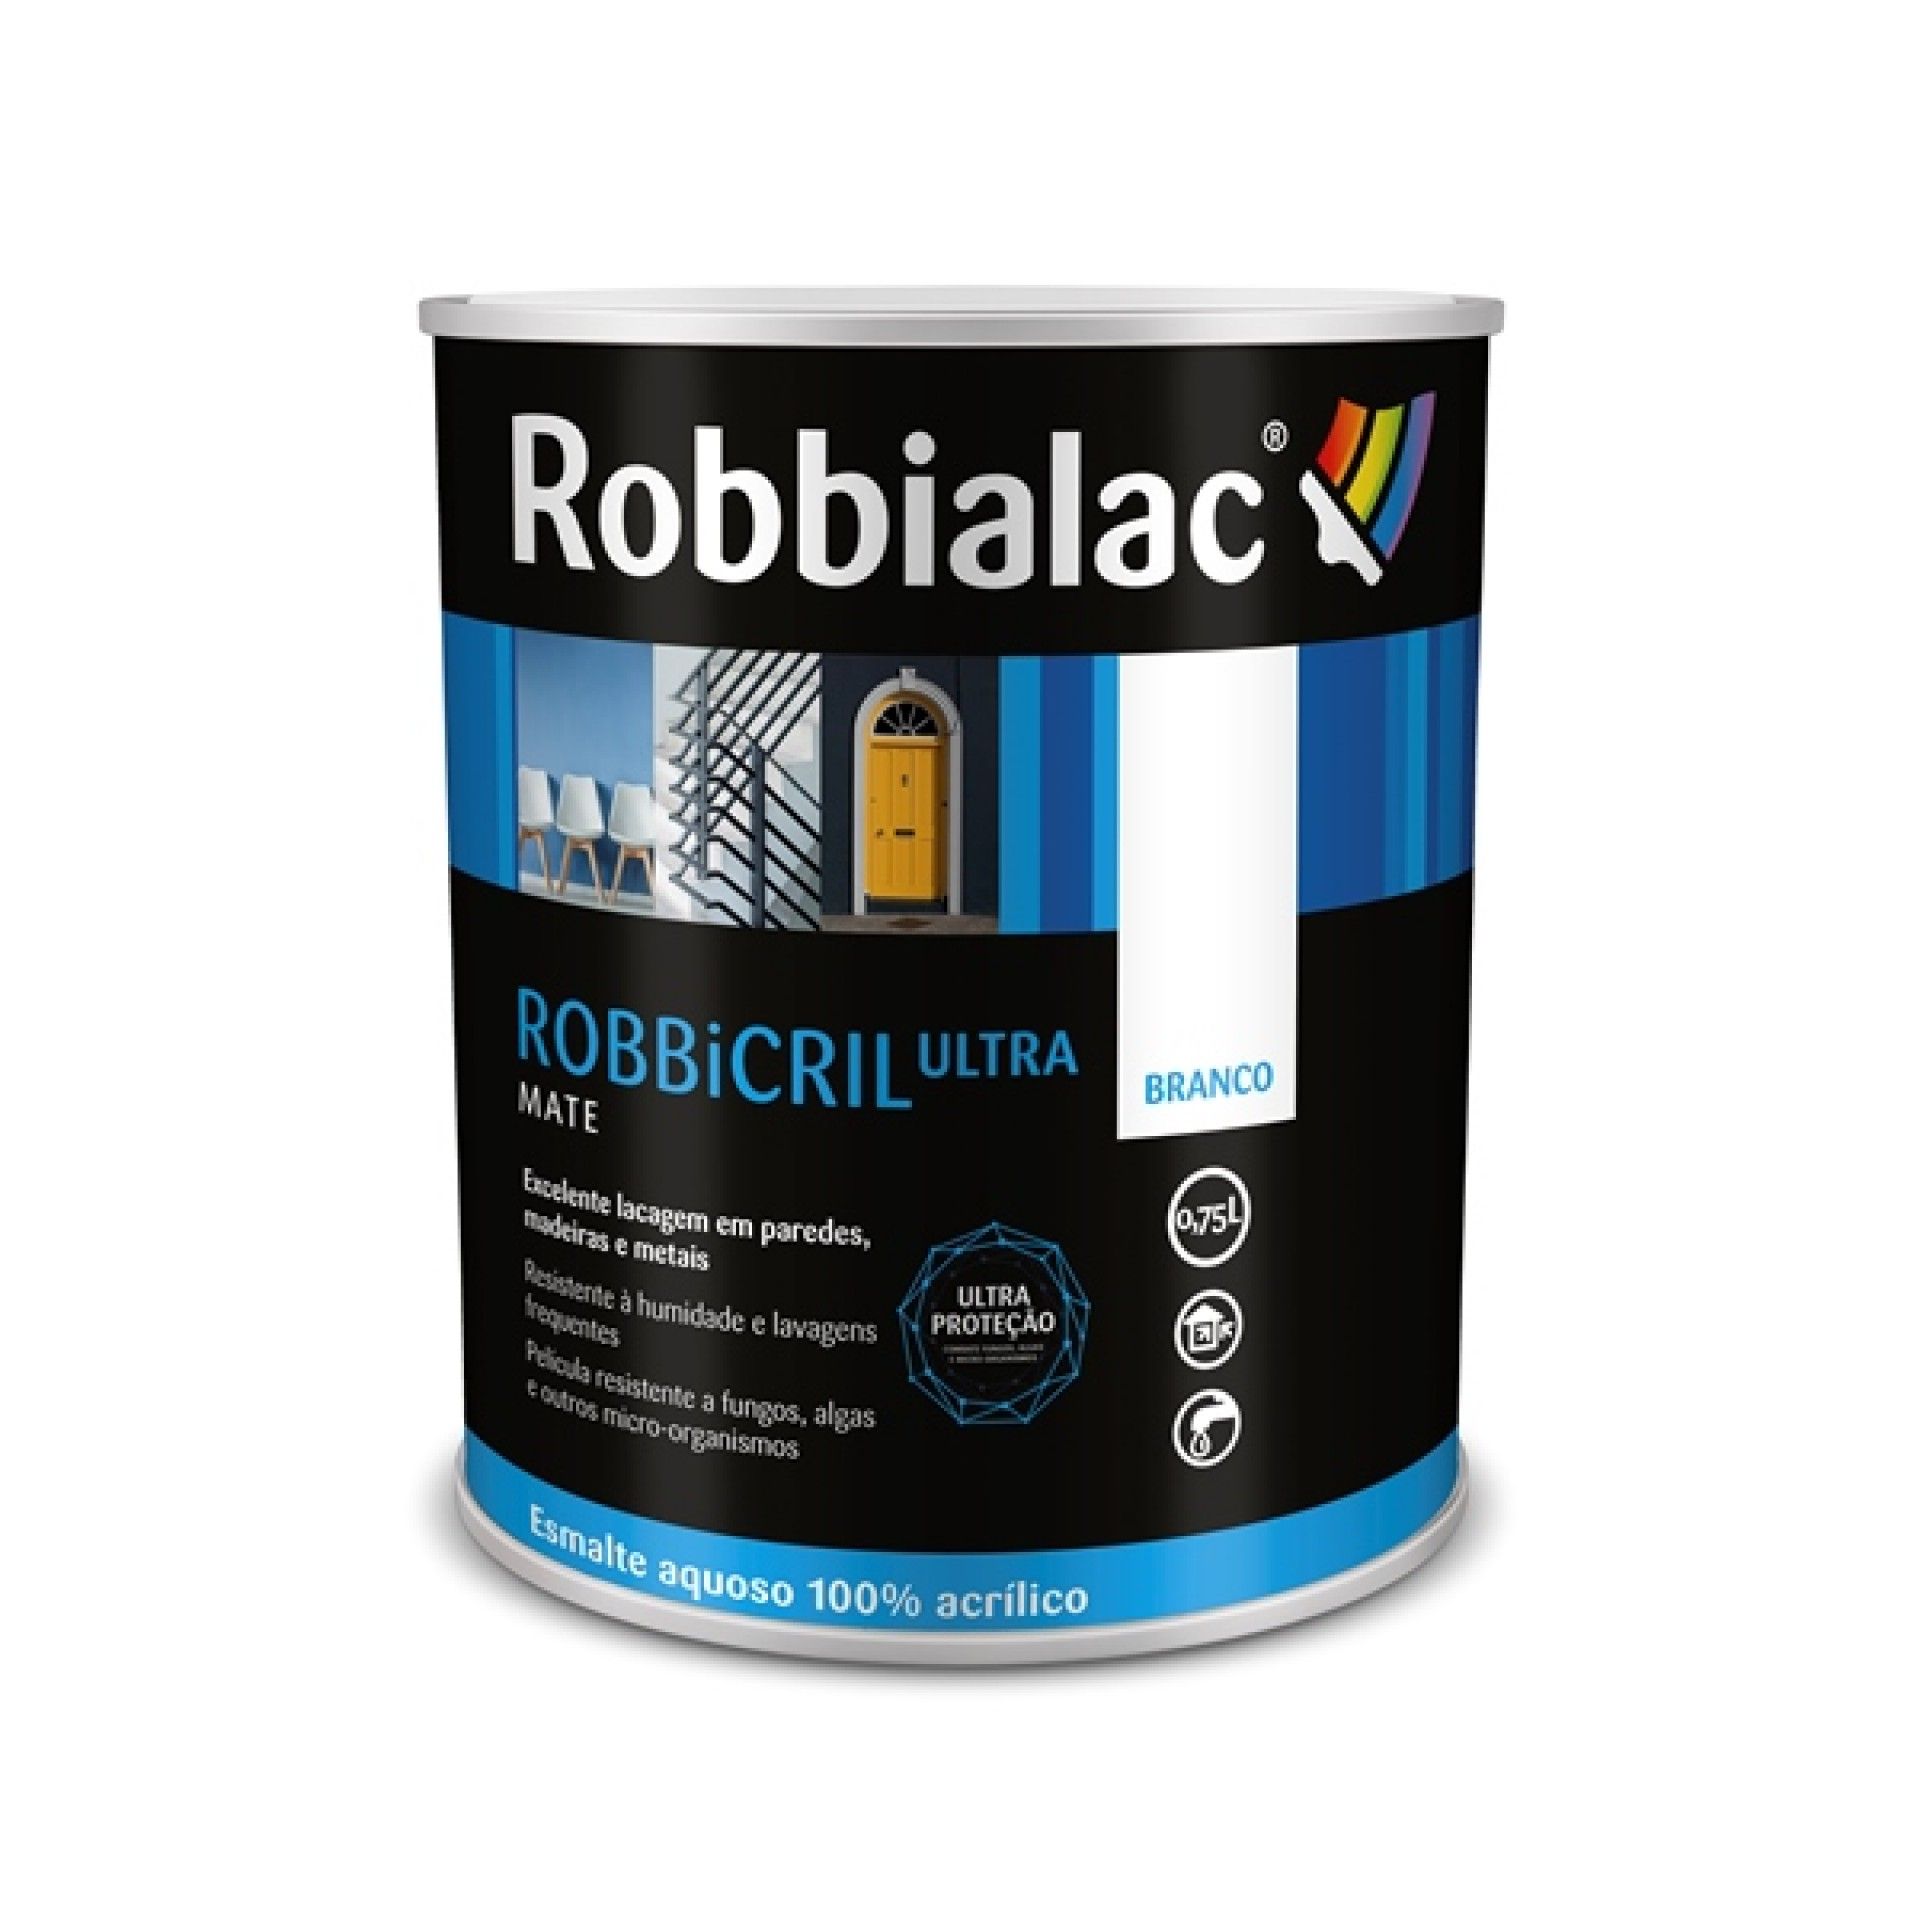 ROBBiCRIL Ultra Acetinado Robbialac - Joao Garcia _ Produto